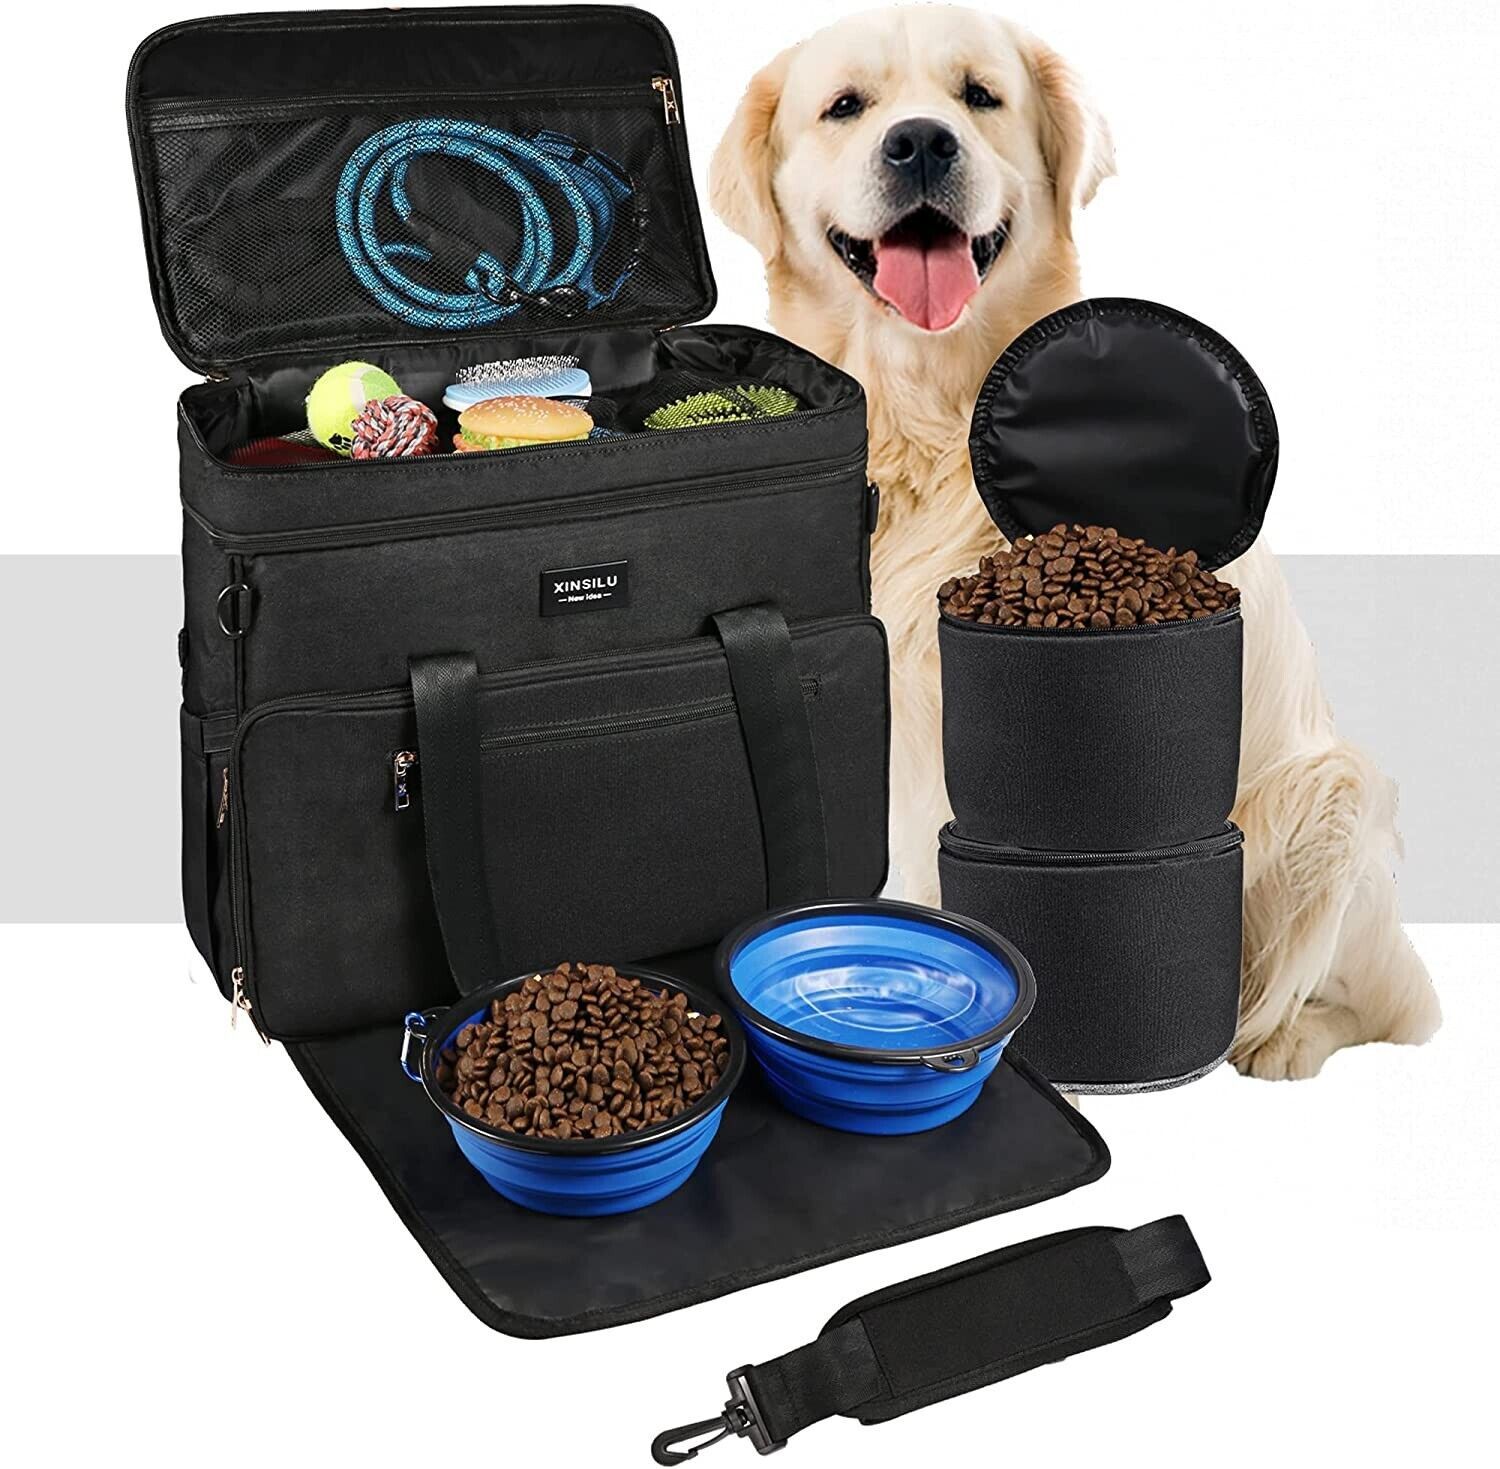 Dog Travel Bag Pet Owner Multi-Use Dog Outdoor Bag Airplane Approved Black - $33.25